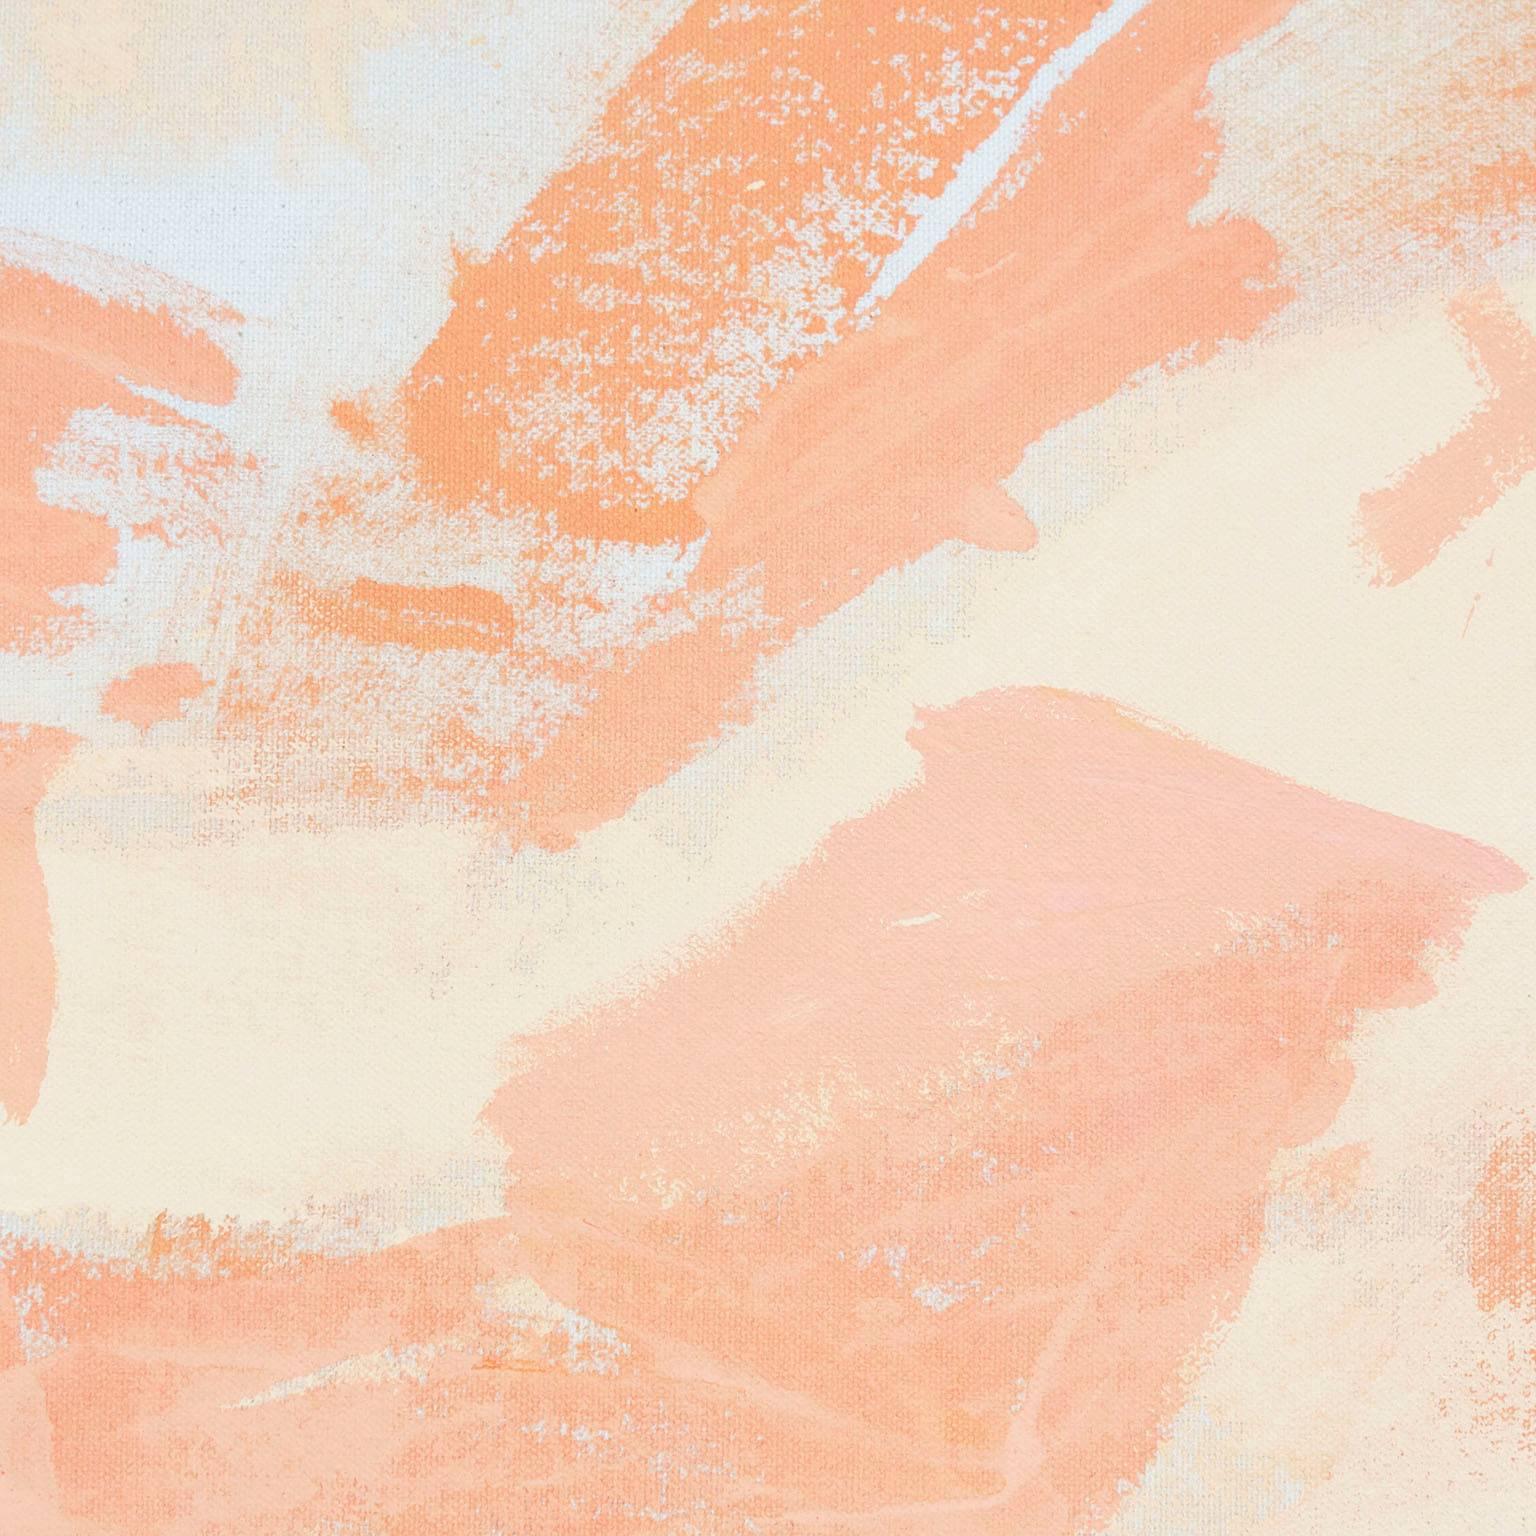 Für Fort Makers malt Naomi Clark lebhafte abstrakte Kompositionen auf Stoffen, die dann zu brauchbaren Objekten verarbeitet werden. Naomis Two Hue-Malstil ist in Form und Farbe einheitlich, und doch gleicht kein einziges Stück Stoff dem anderen.